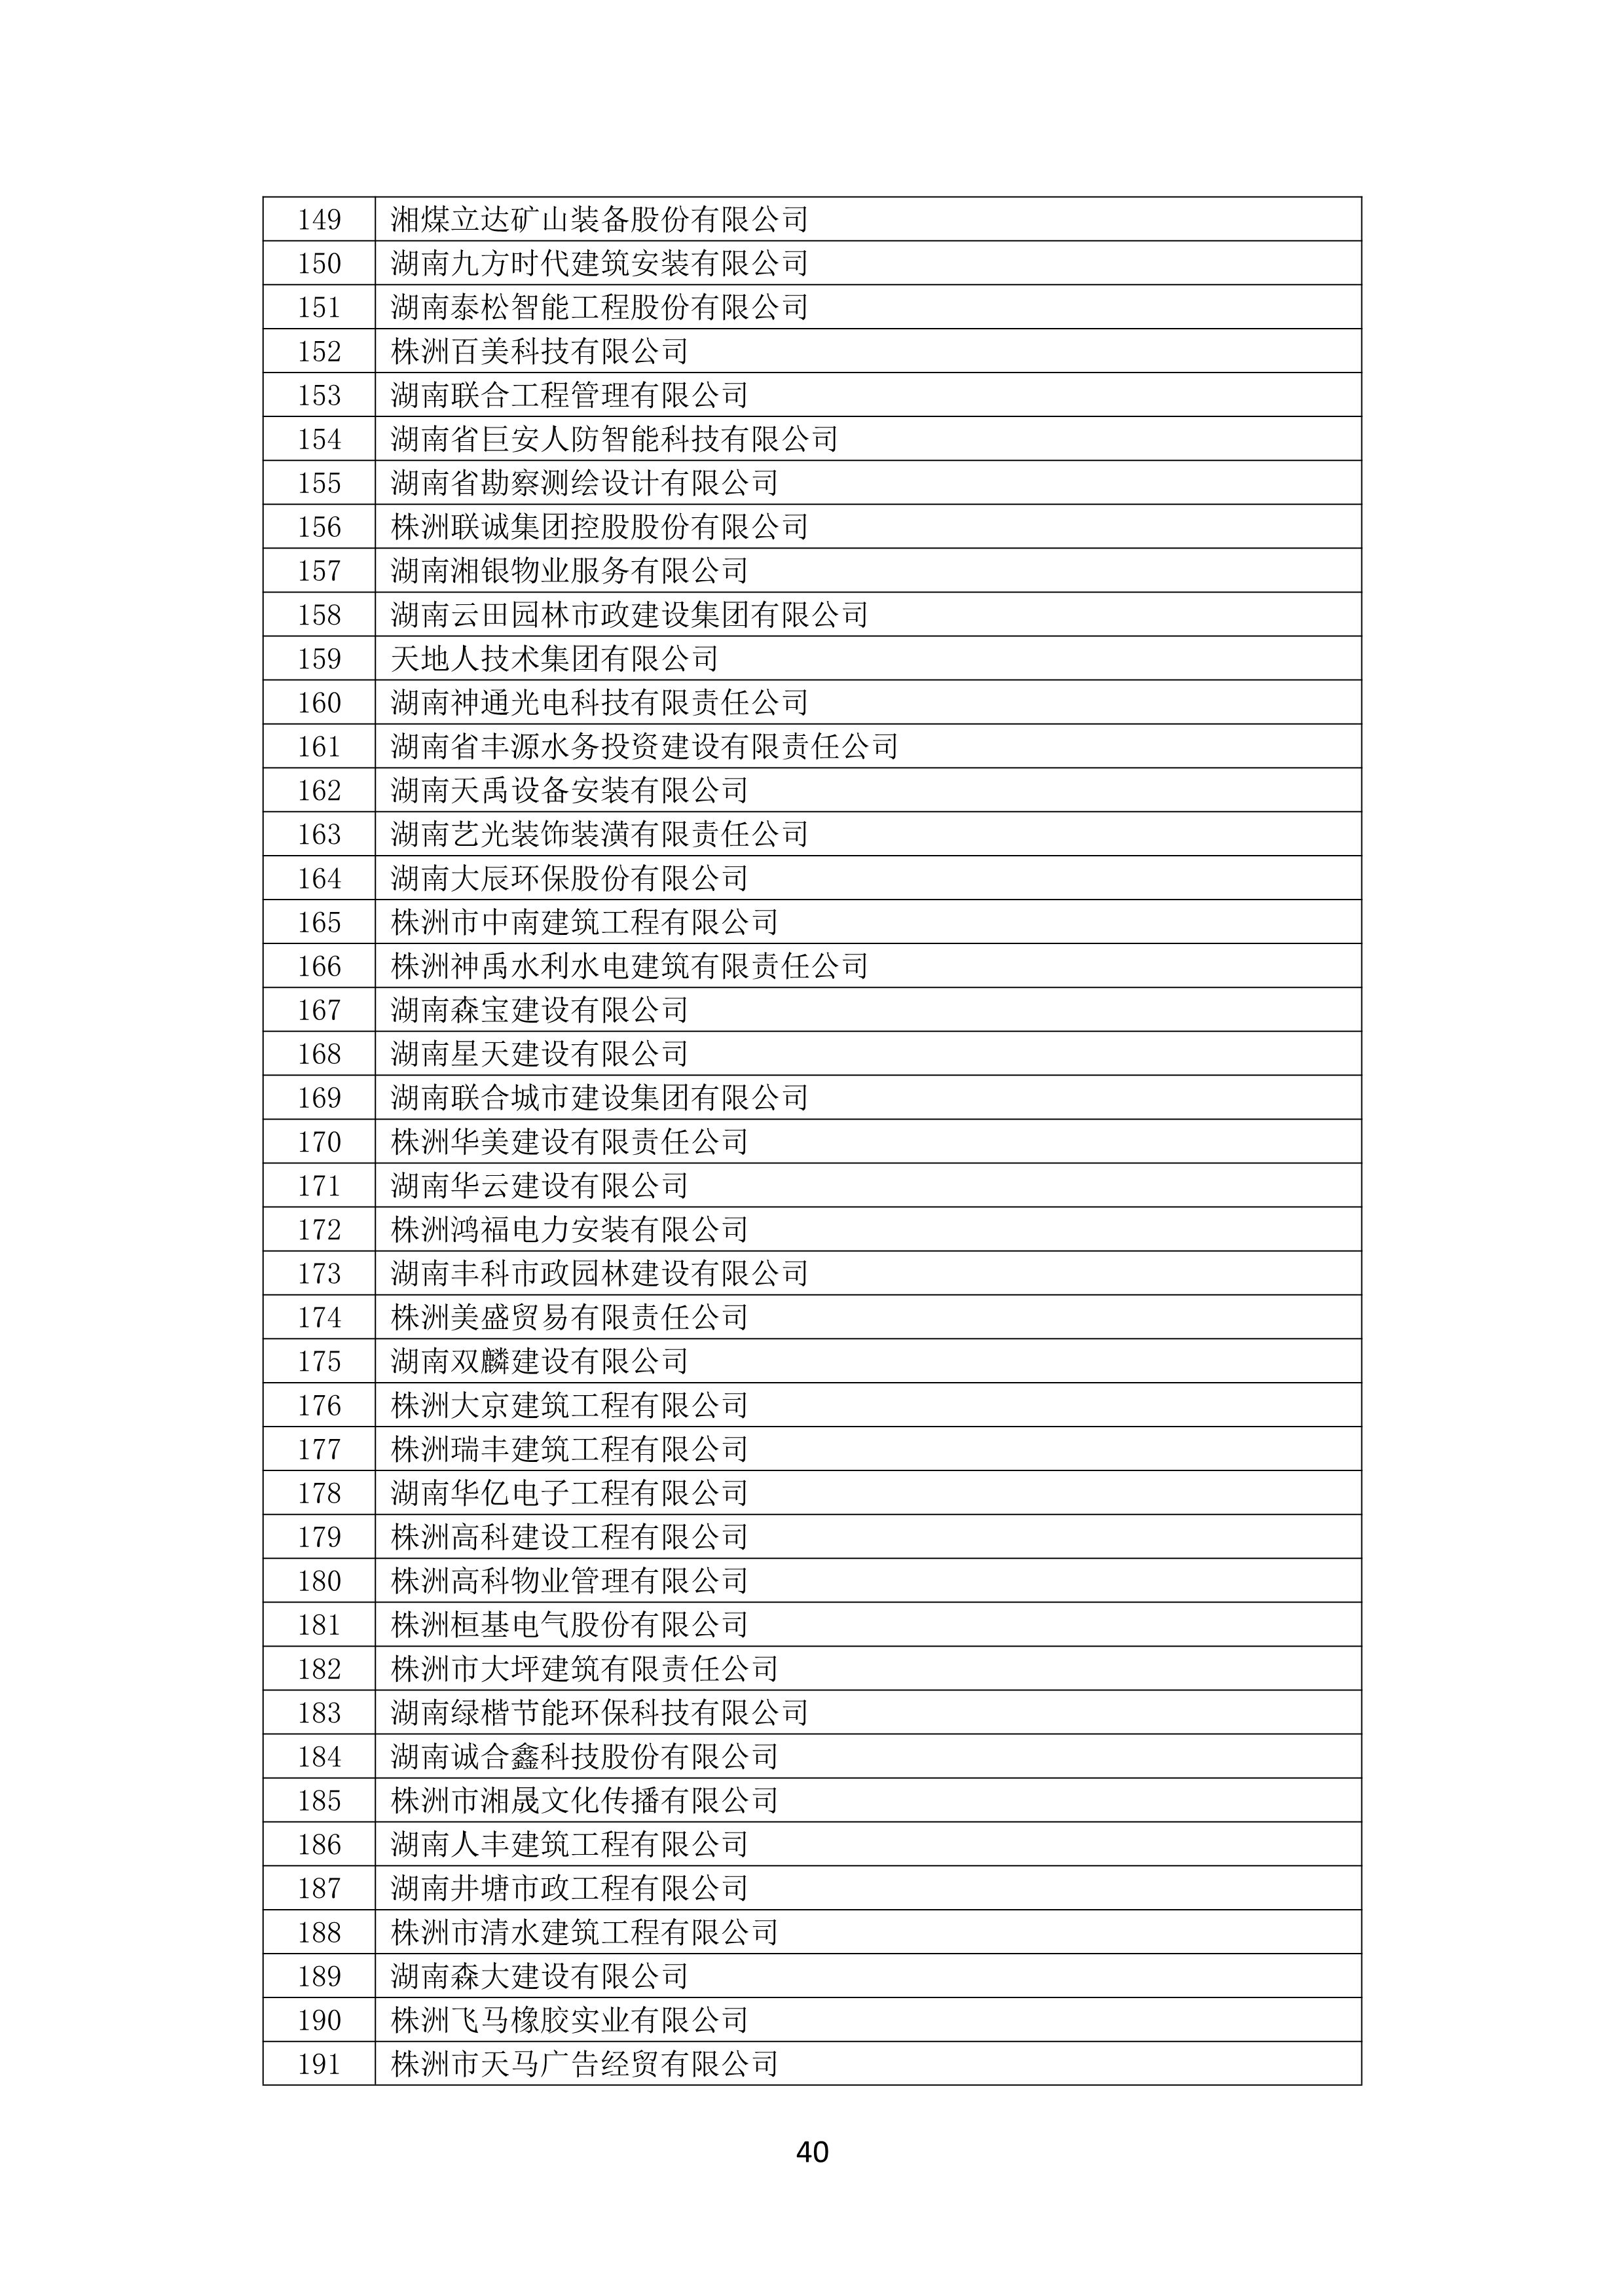 2021 年(nián)度湖南省守合同重信用企業名單_41.png